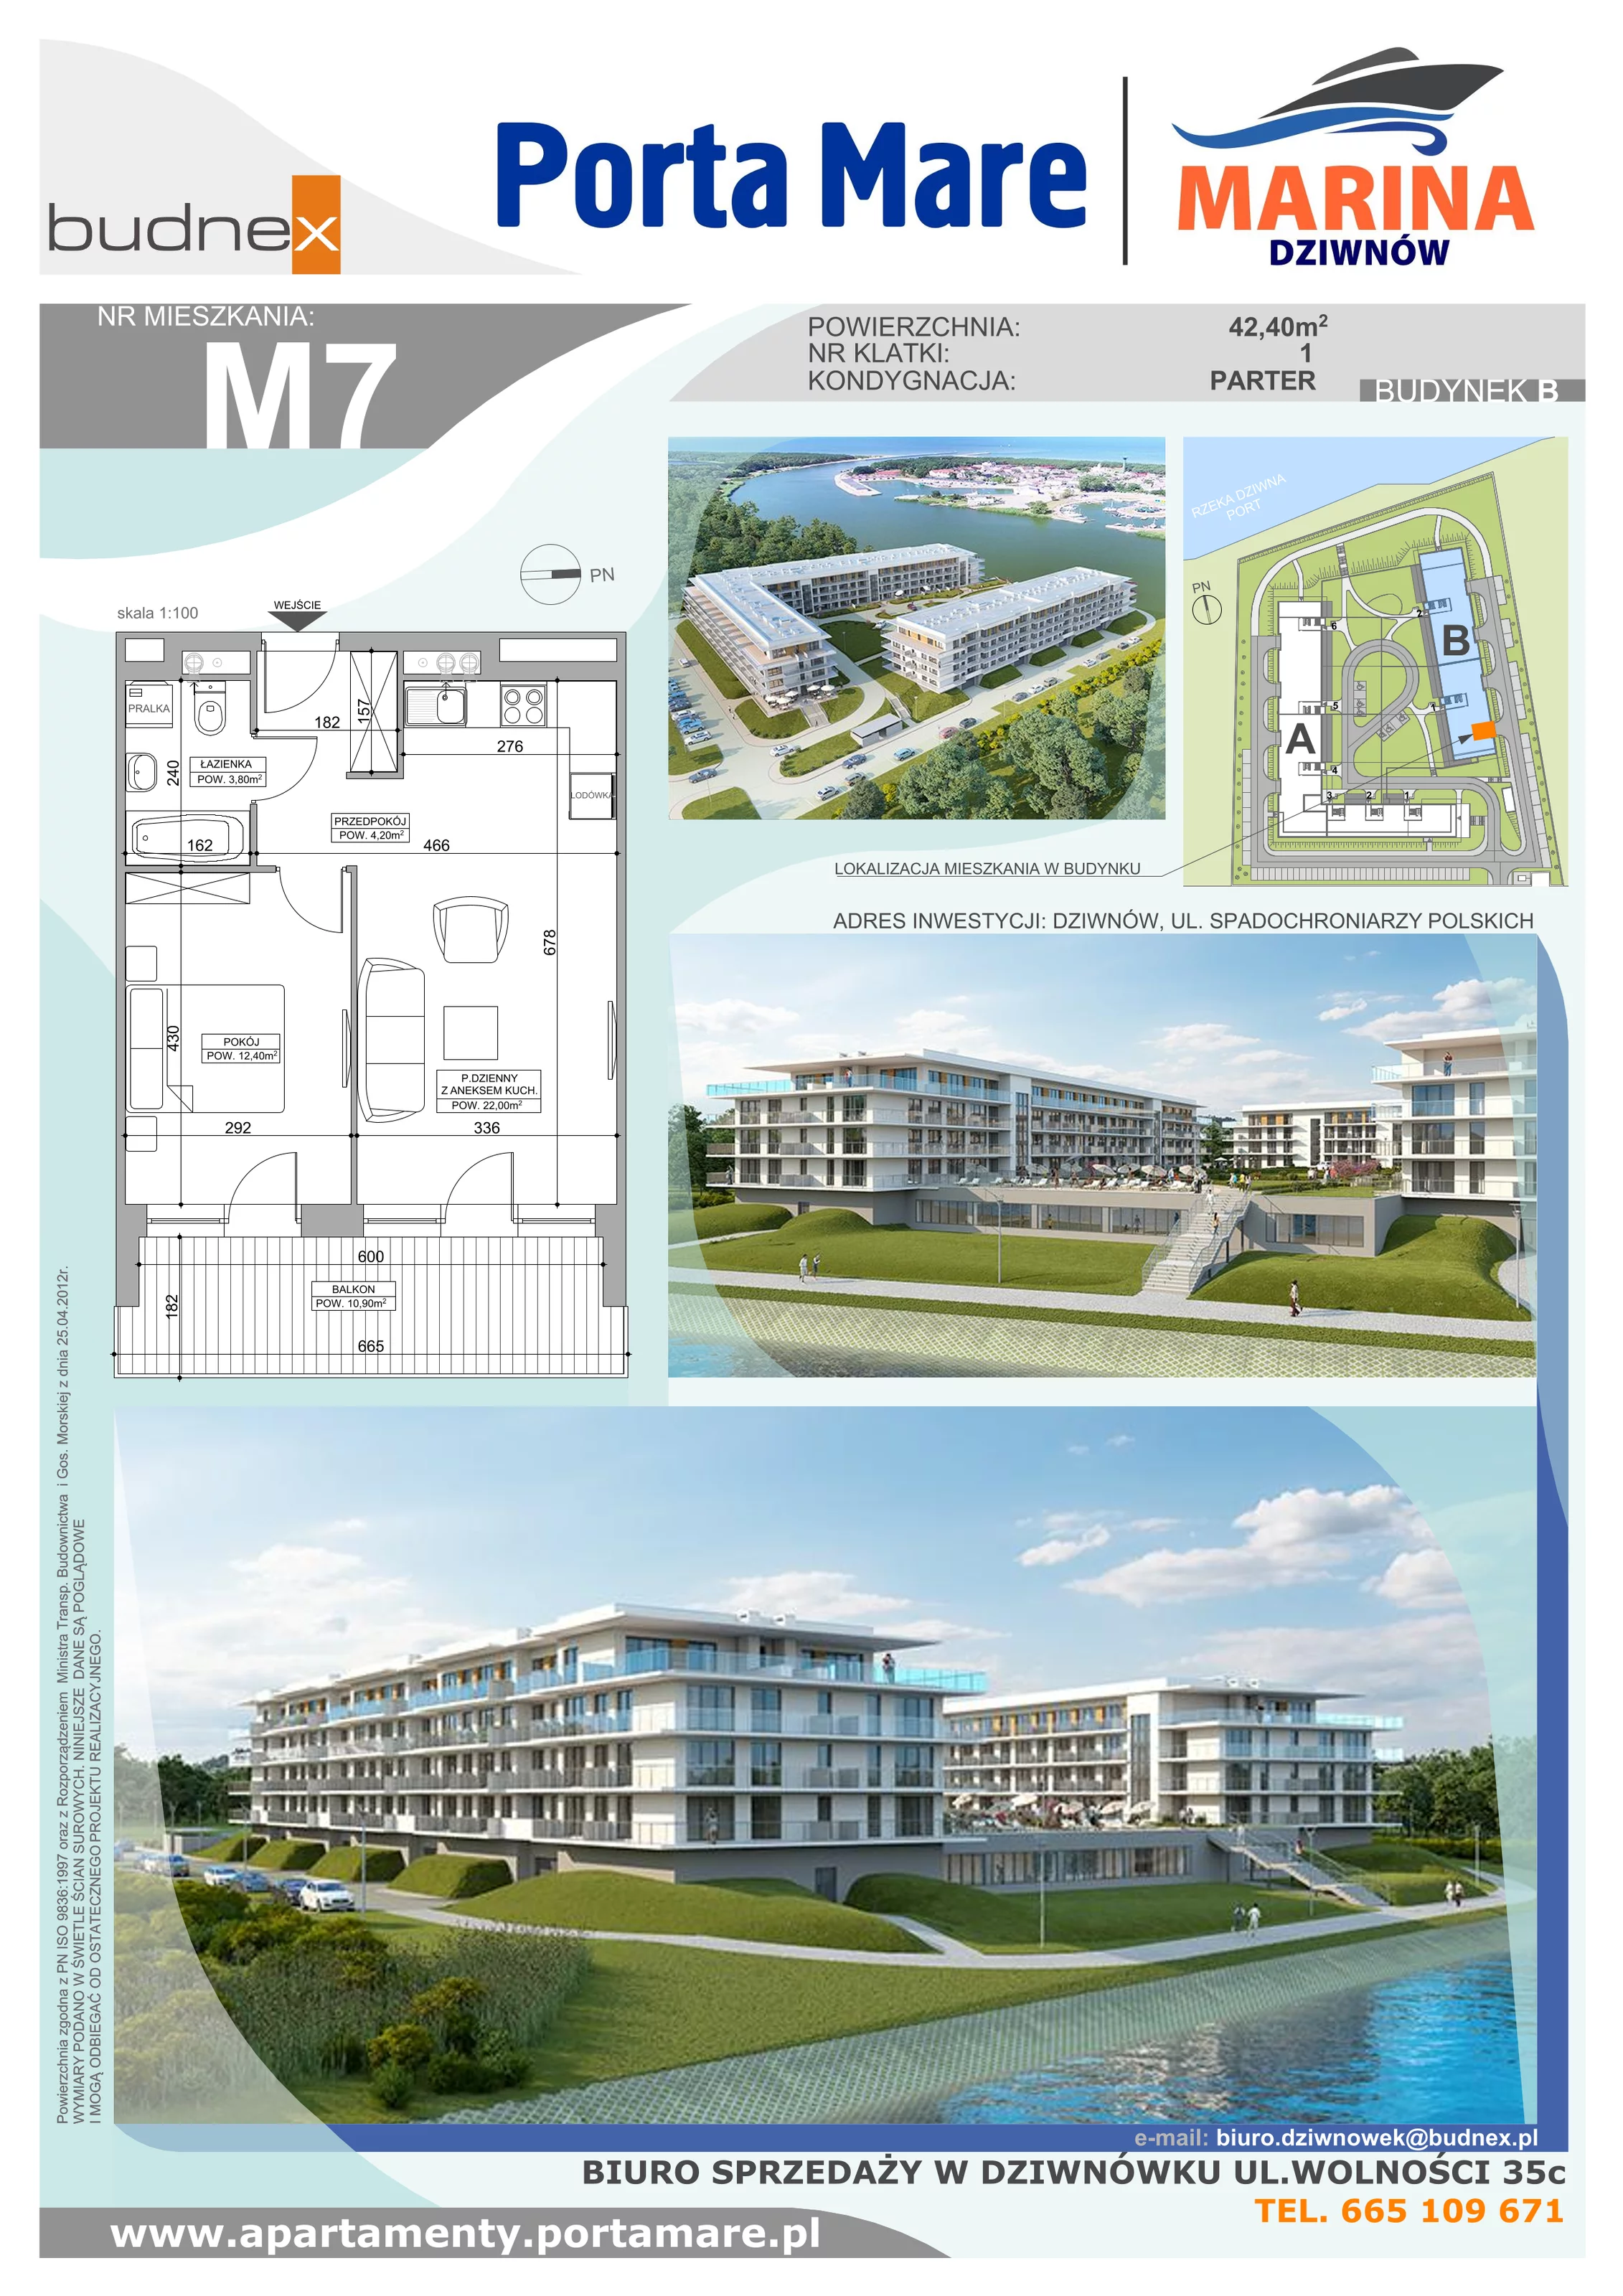 Apartament 42,40 m², parter, oferta nr B.1.M7, Porta Mare MARINA Dziwnów, Dziwnów, ul. Spadochroniarzy Polskich 10